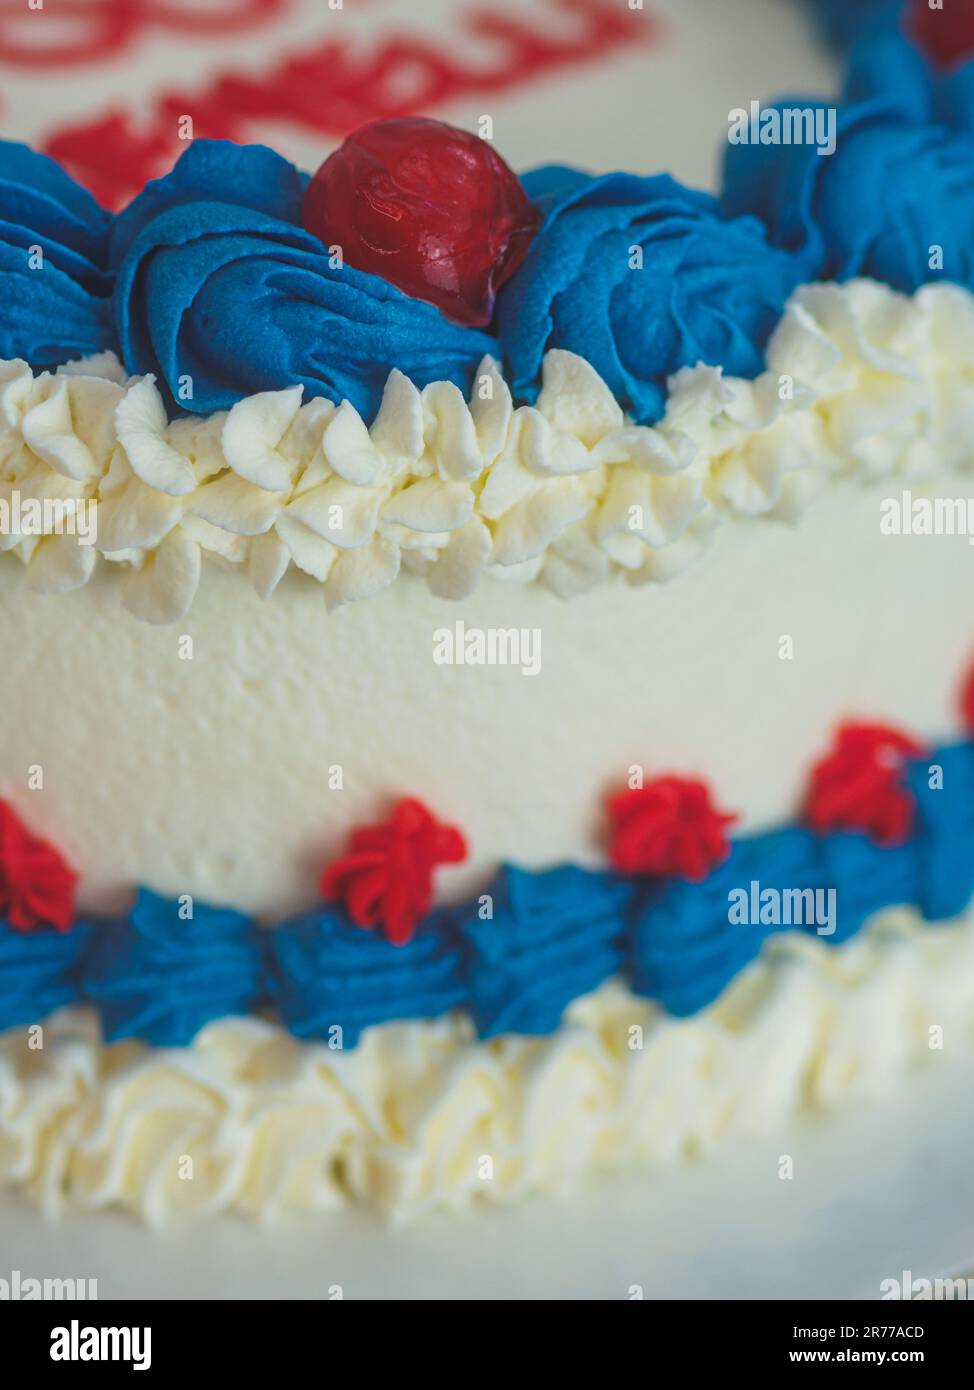 gâteau givré blanc bleu rouge isolé sur fond blanc de studio. Couleurs du drapeau américain. Célébration. Banque D'Images